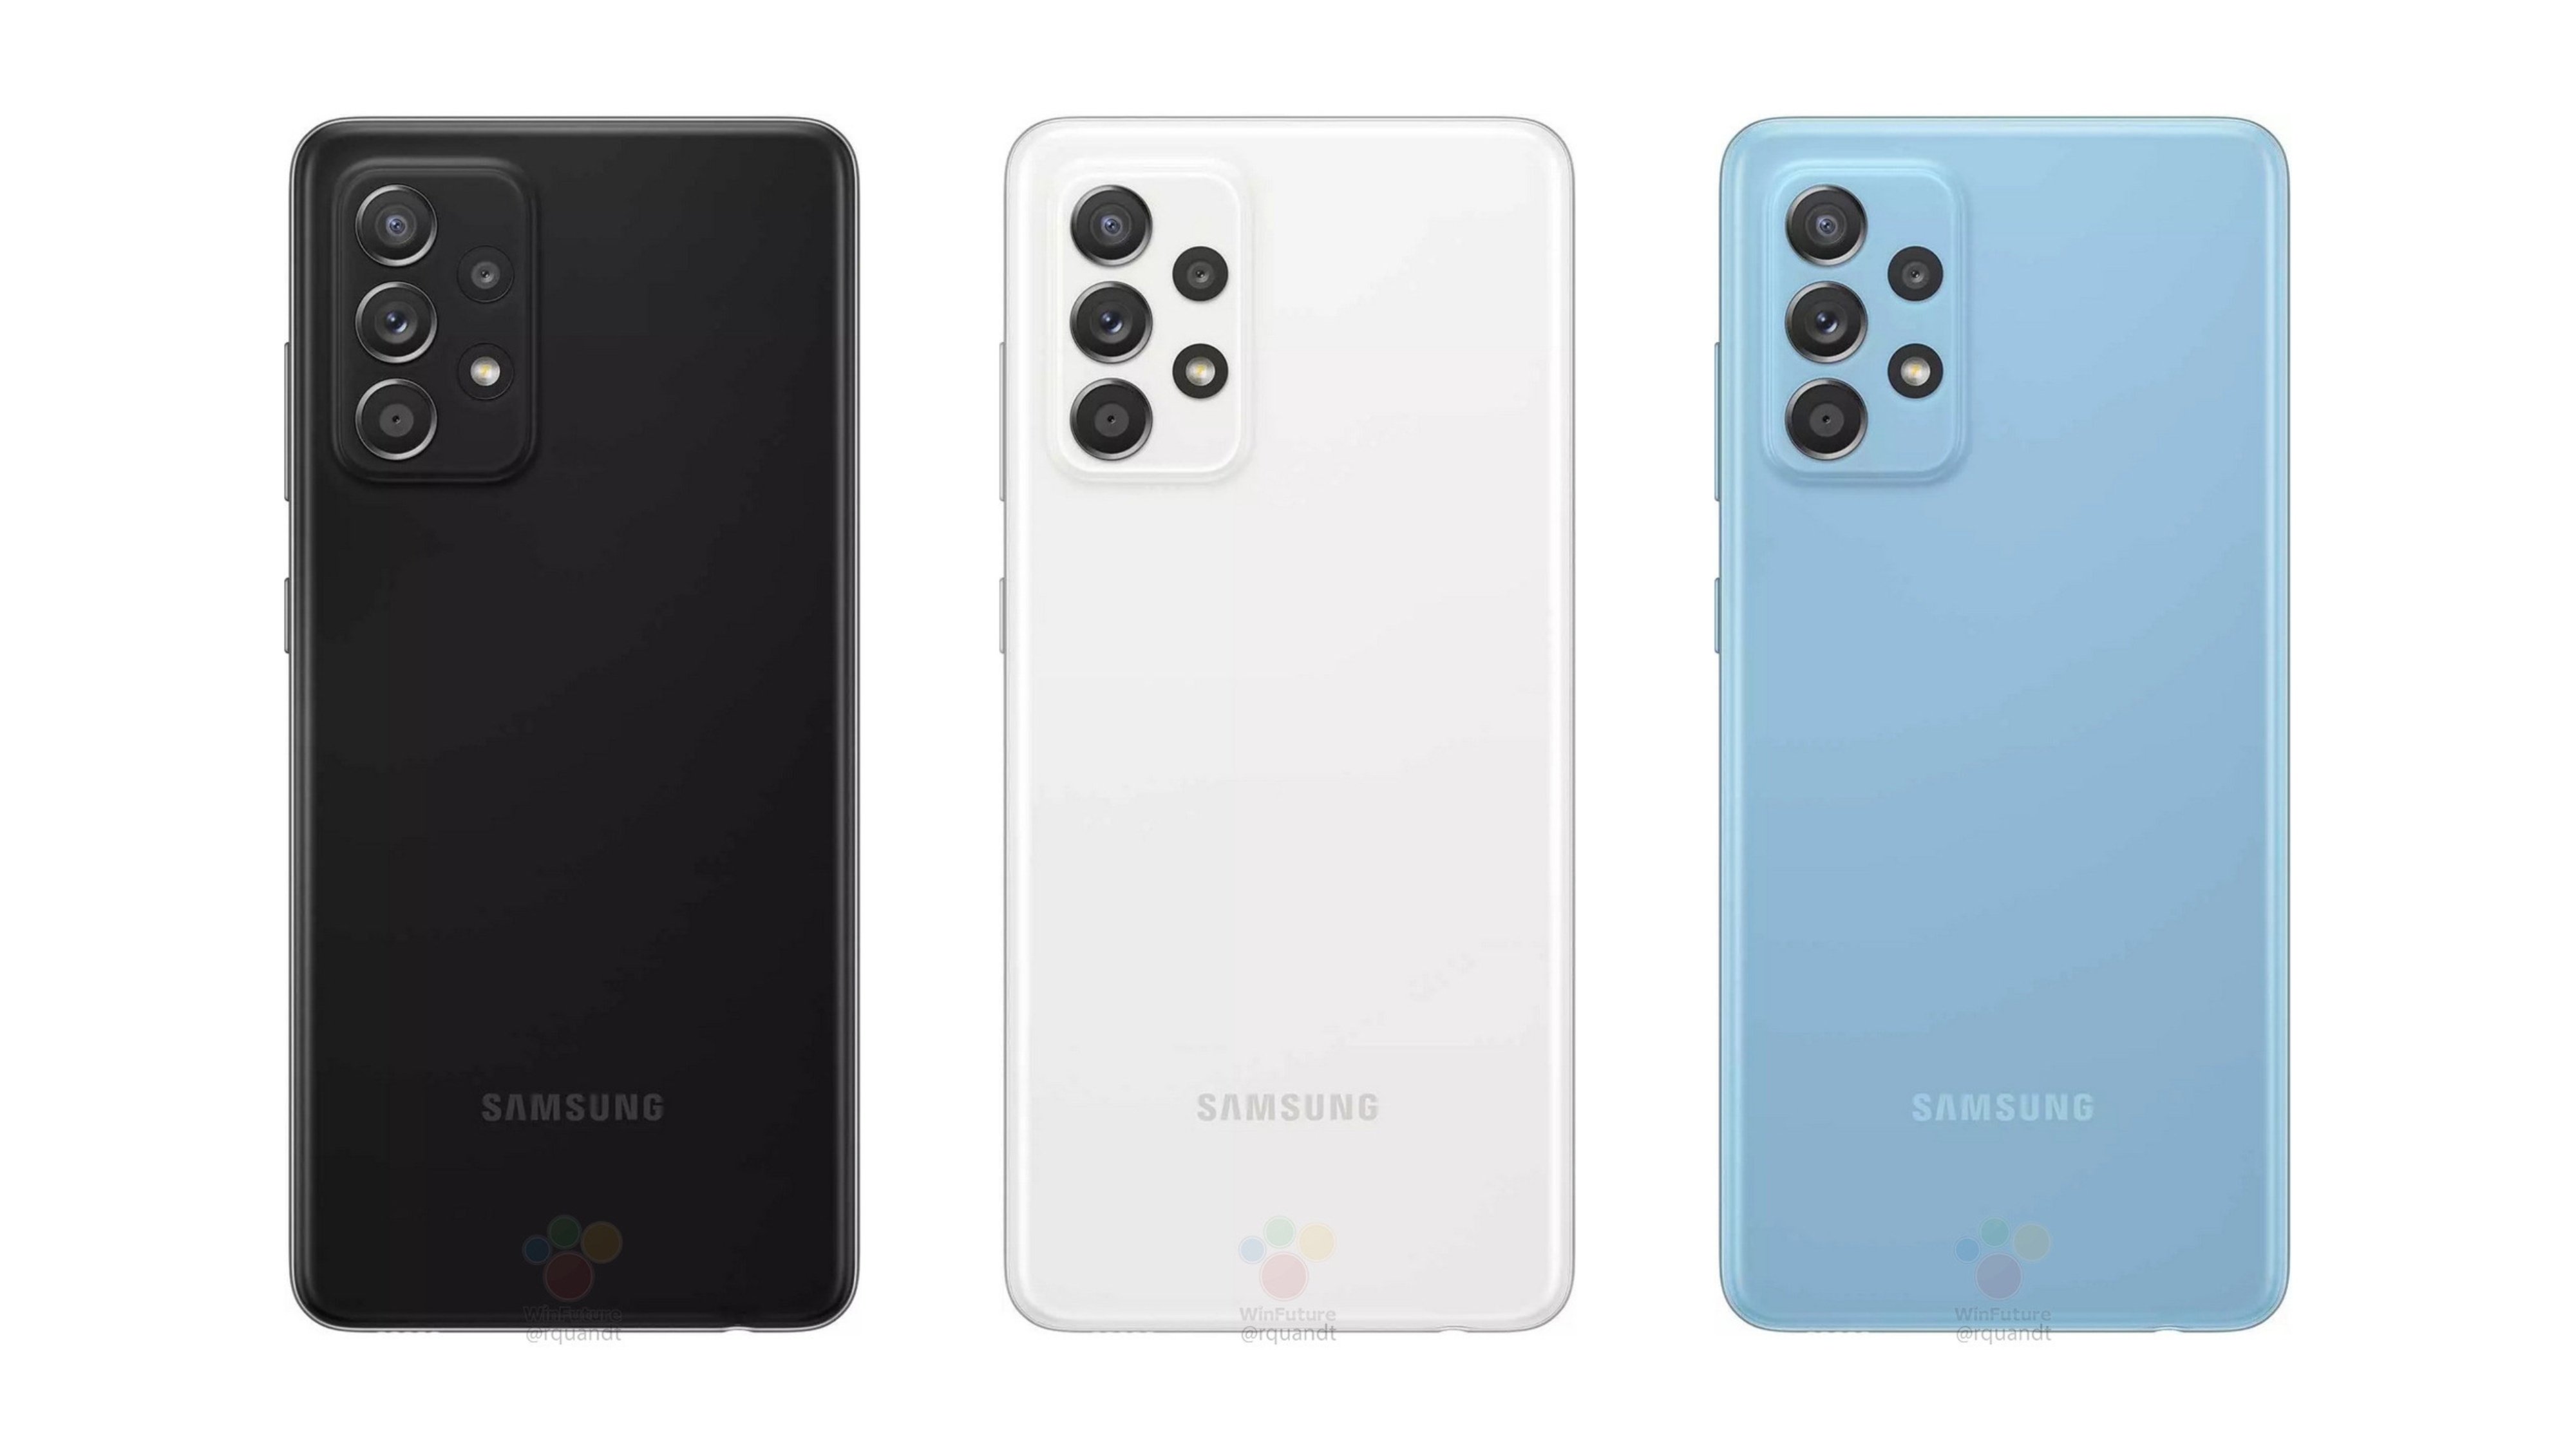 El Samsung Galaxy A52 tendrÃ¡ OIS y pantalla Super AMOLED de 800 nits